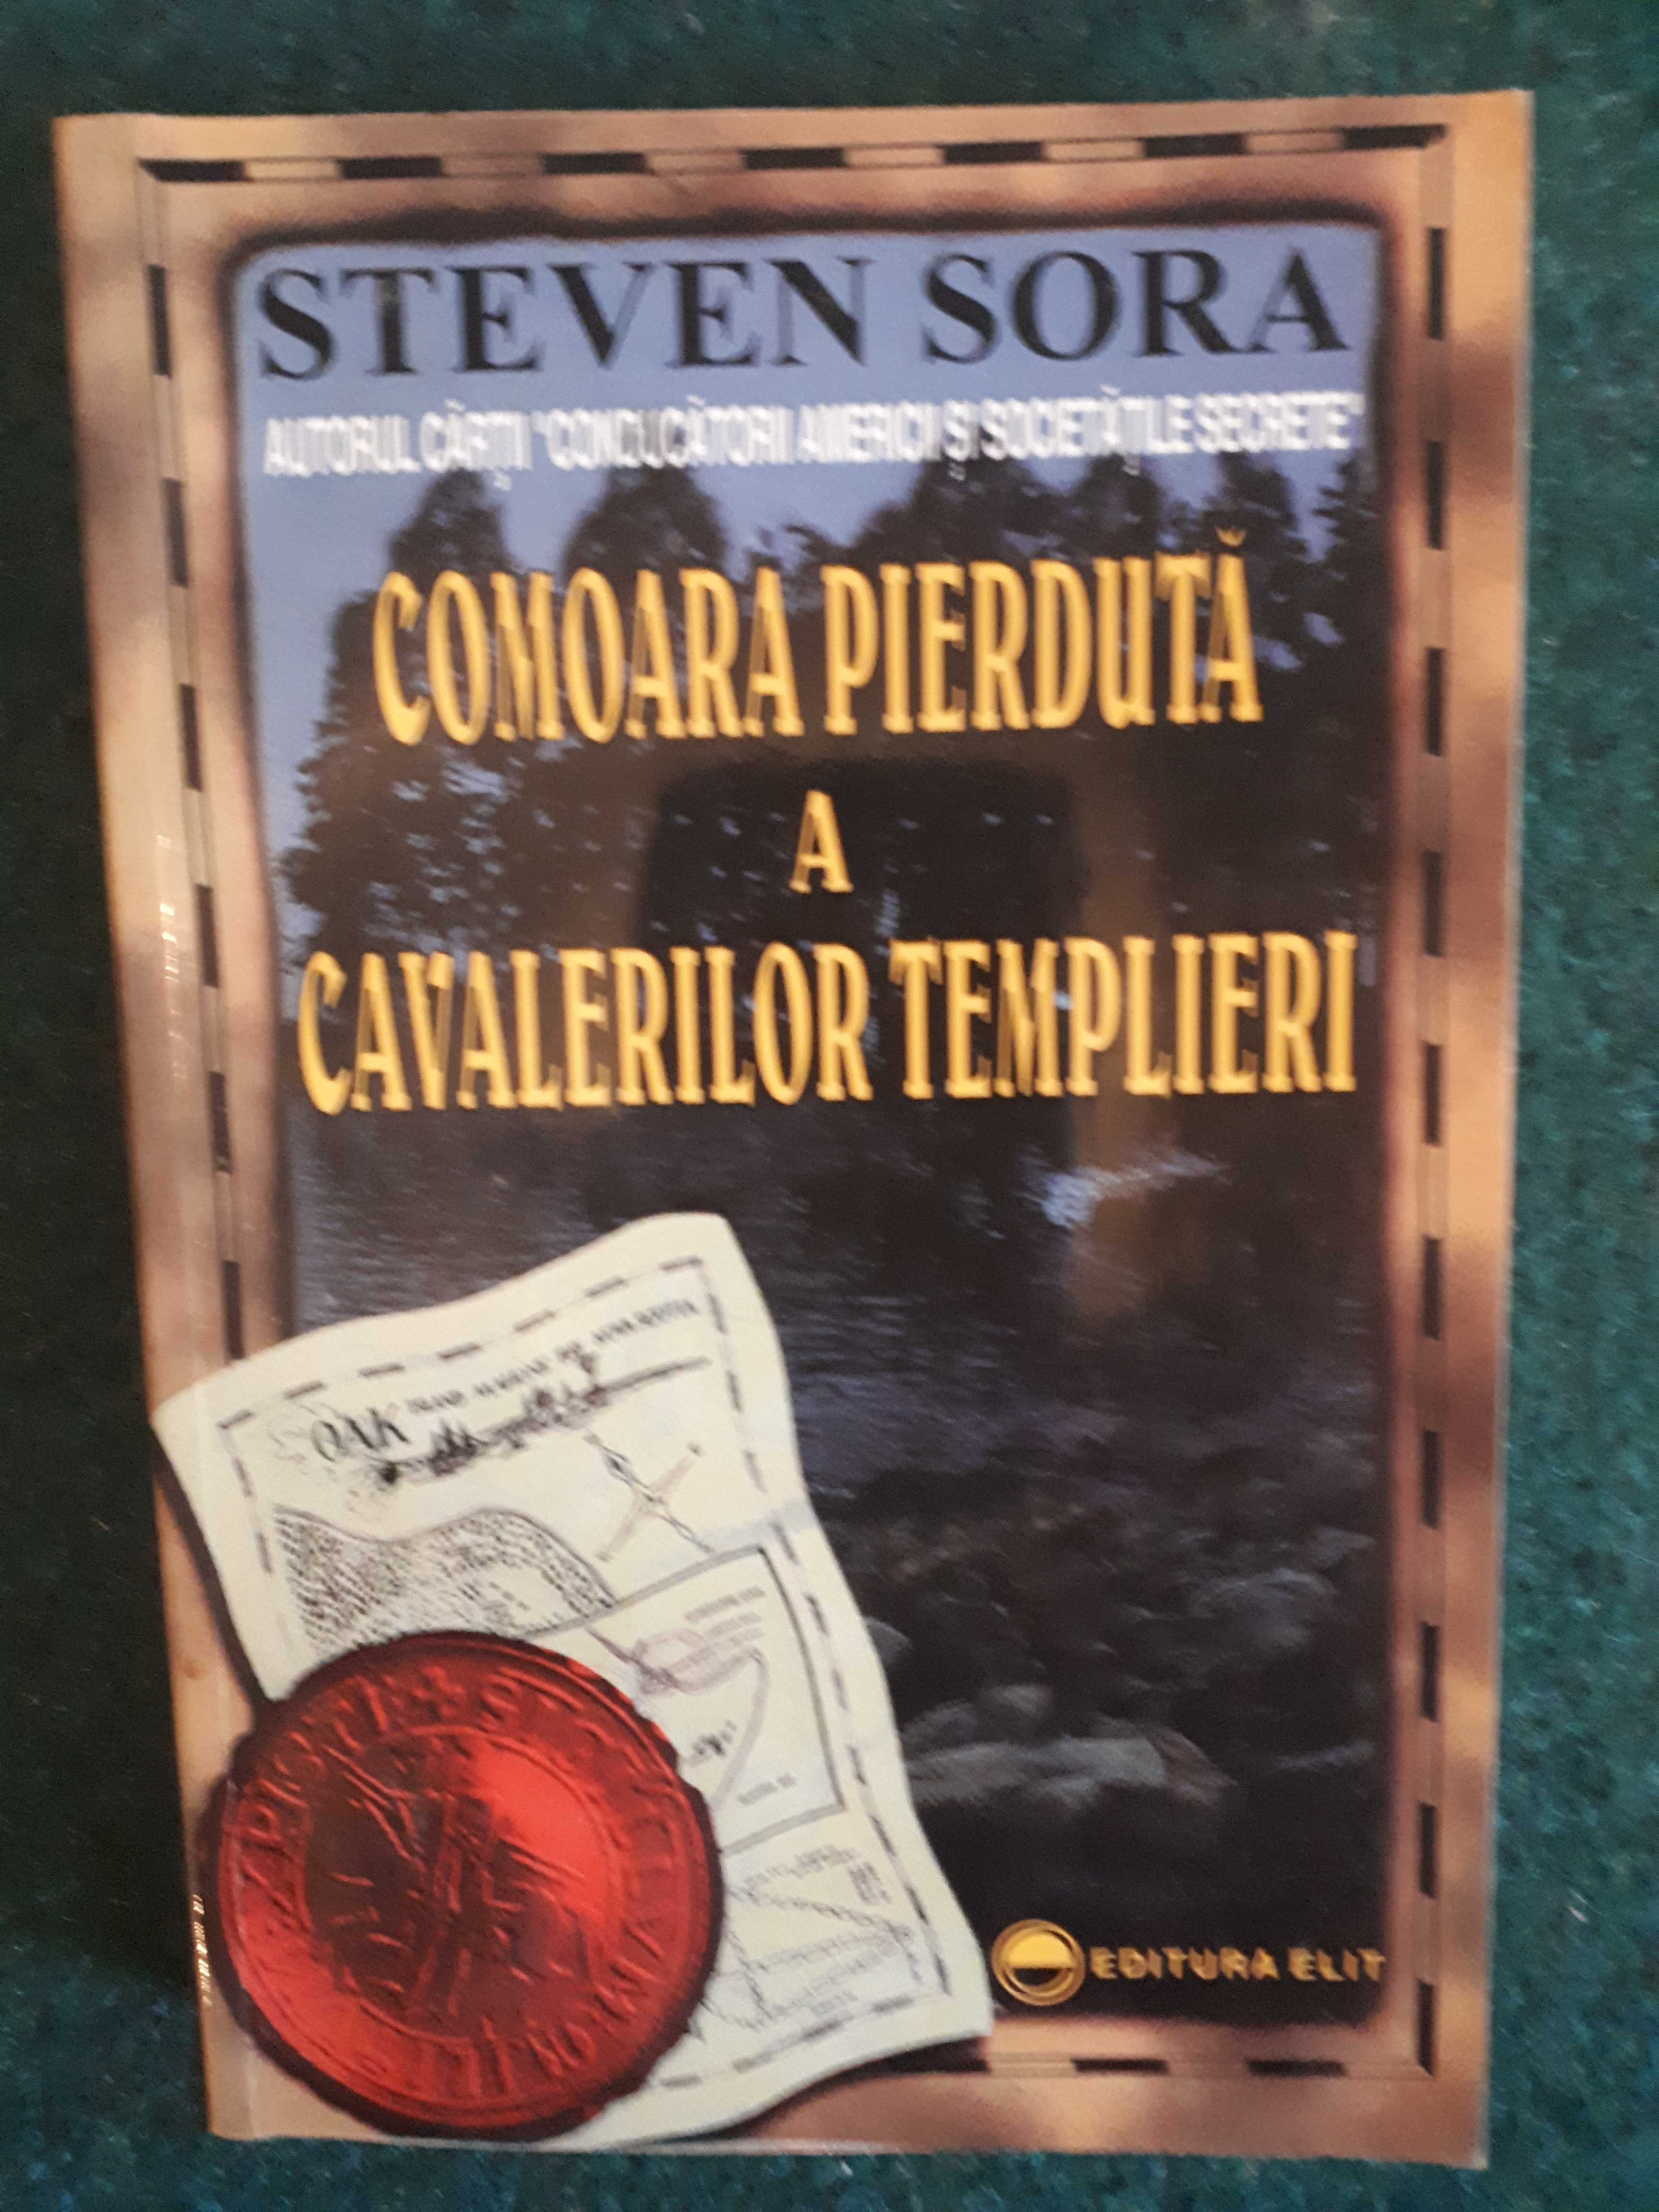 Comoara pierdută a cavalerilor templieri, Steven Sora